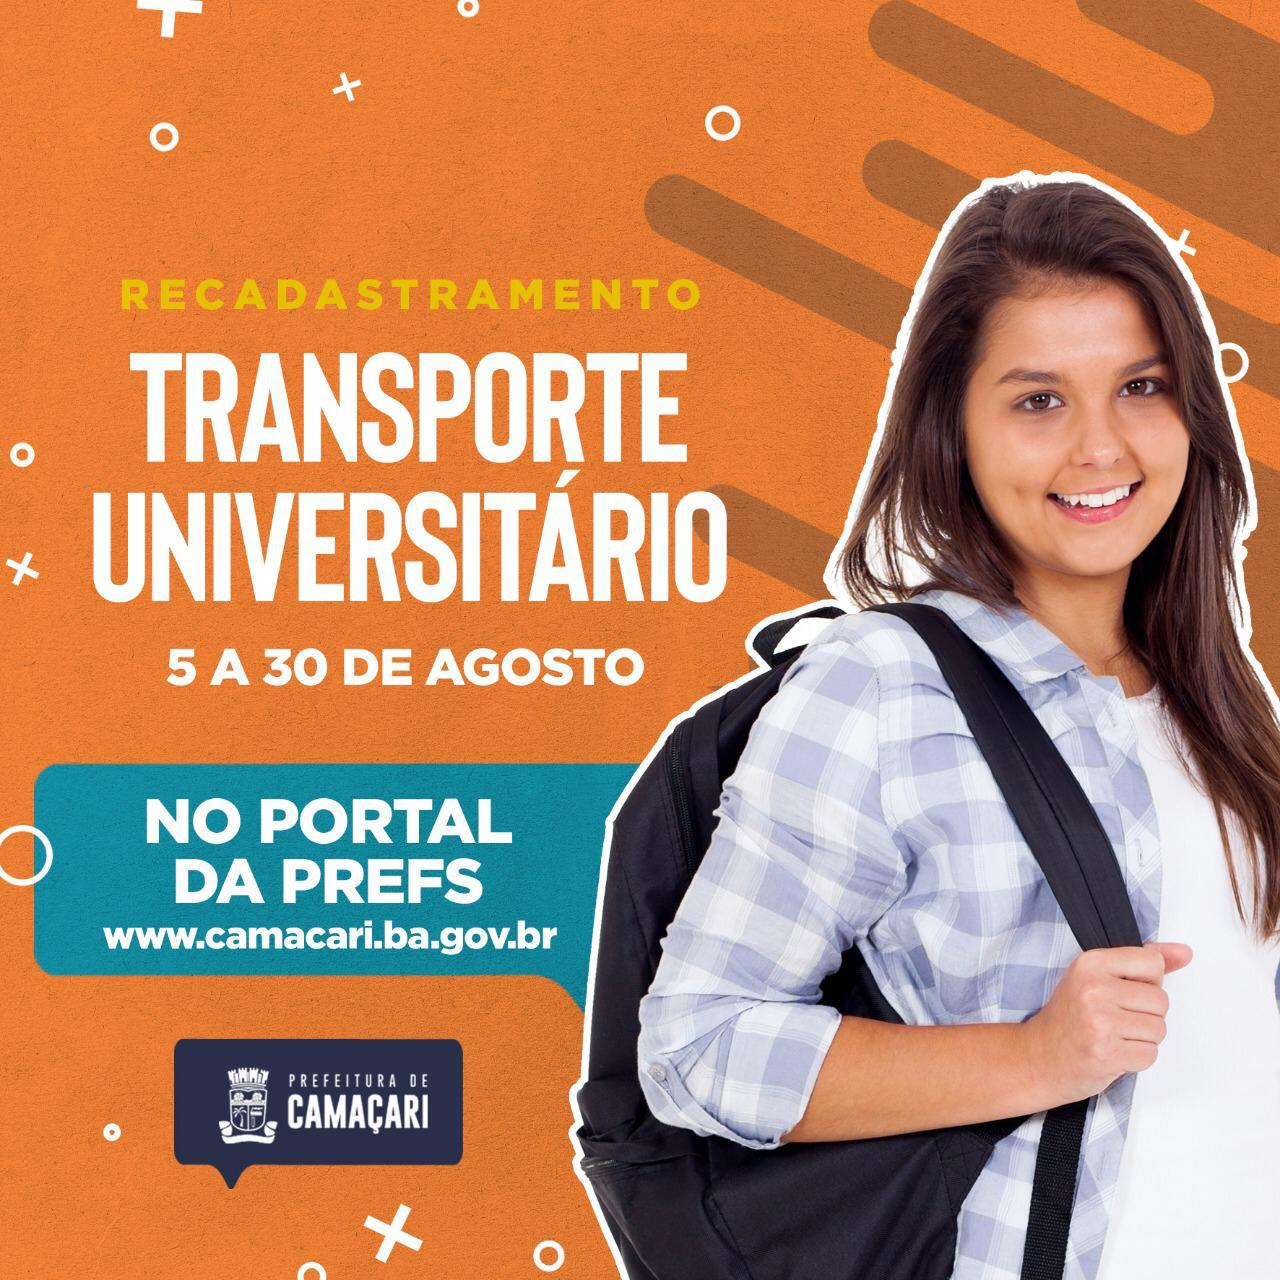 Camaçari: recadastramento do transporte universitário segue até 30 de agosto